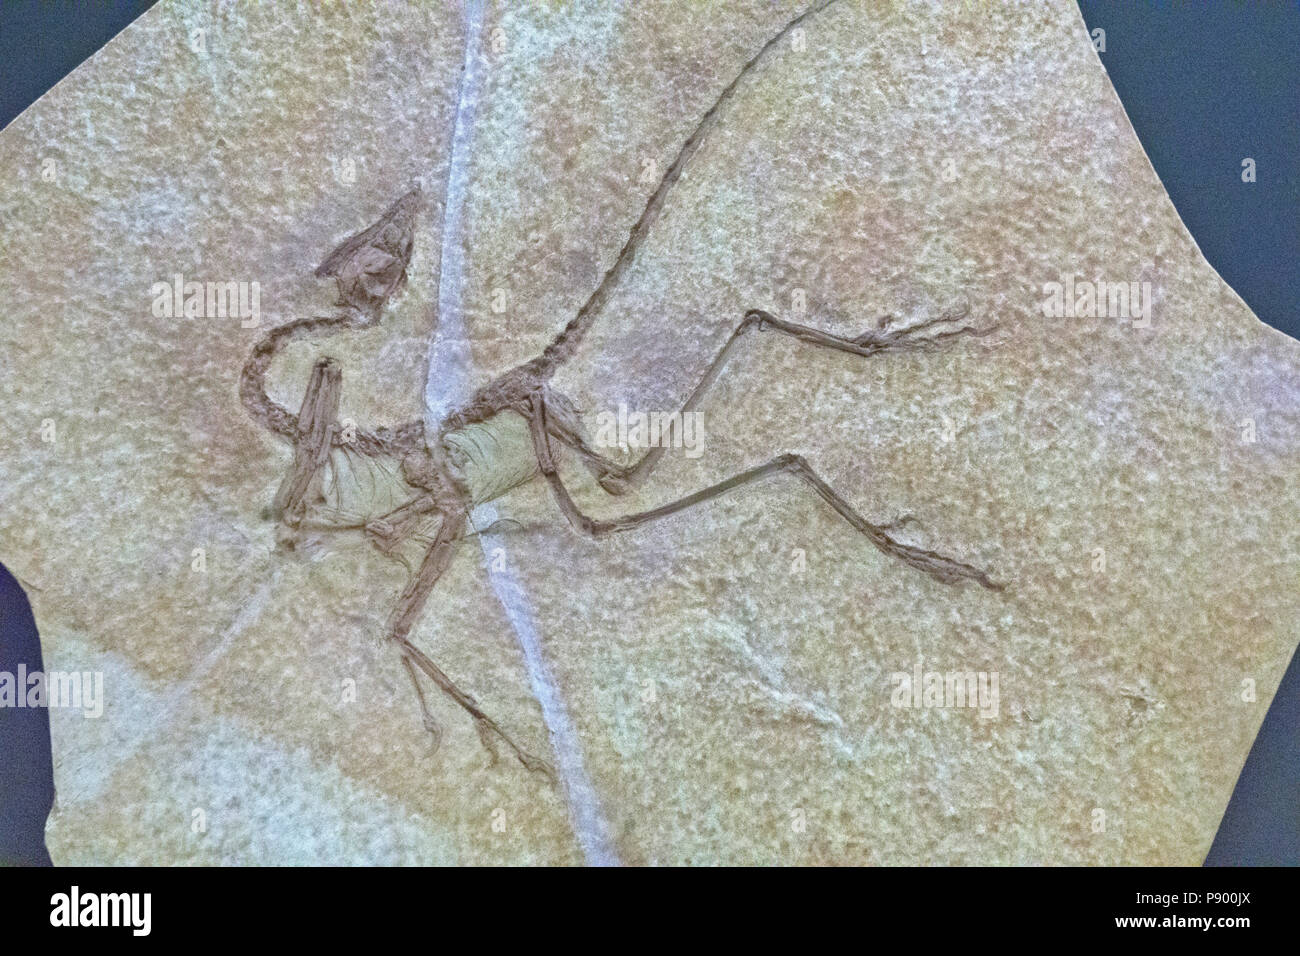 Delicado esqueleto fósil de dinosaurios parecidos a las aves Archaeopteryx finales del Jurásico incrustado en banda (cast) en el caso de vidrio Pantalla Hall de Dinosaurios Saurischian Foto de stock